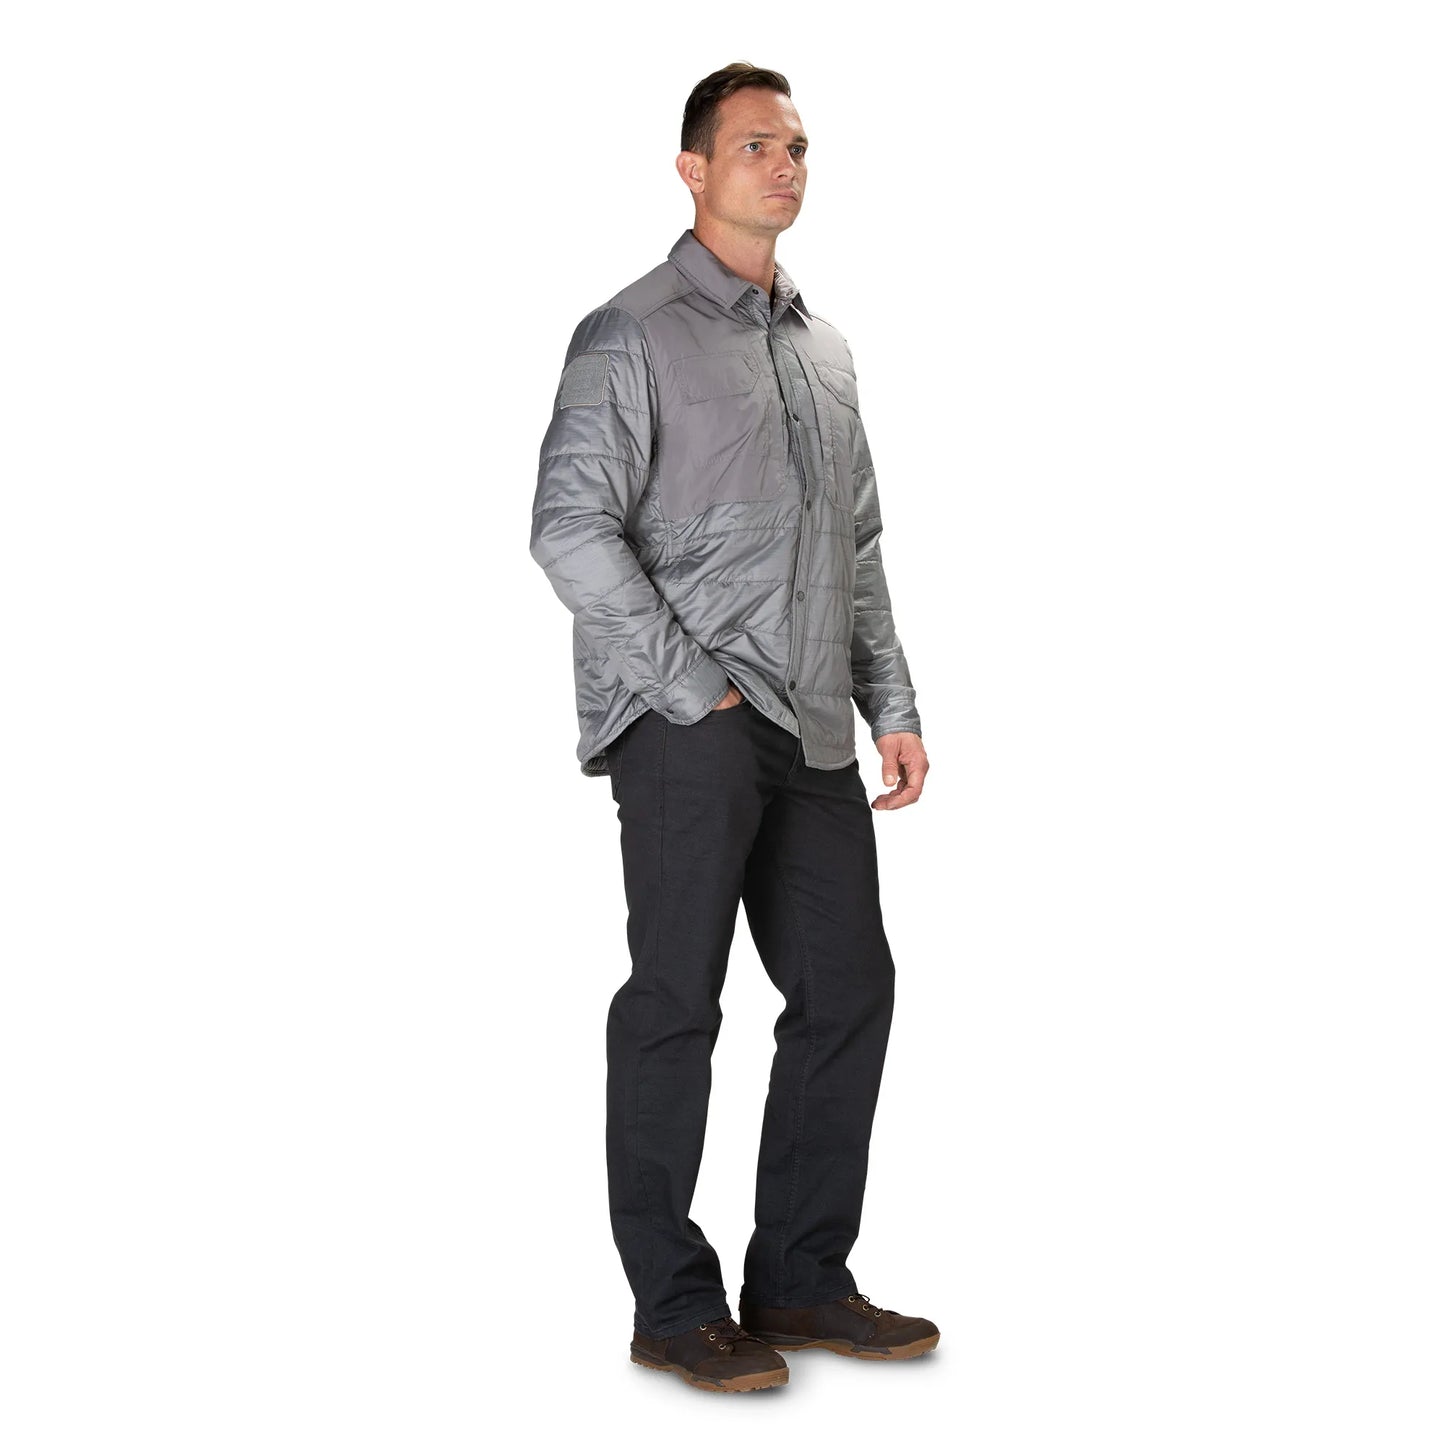 5.11 Tactical Peninsula Insulator Shirt Jacket